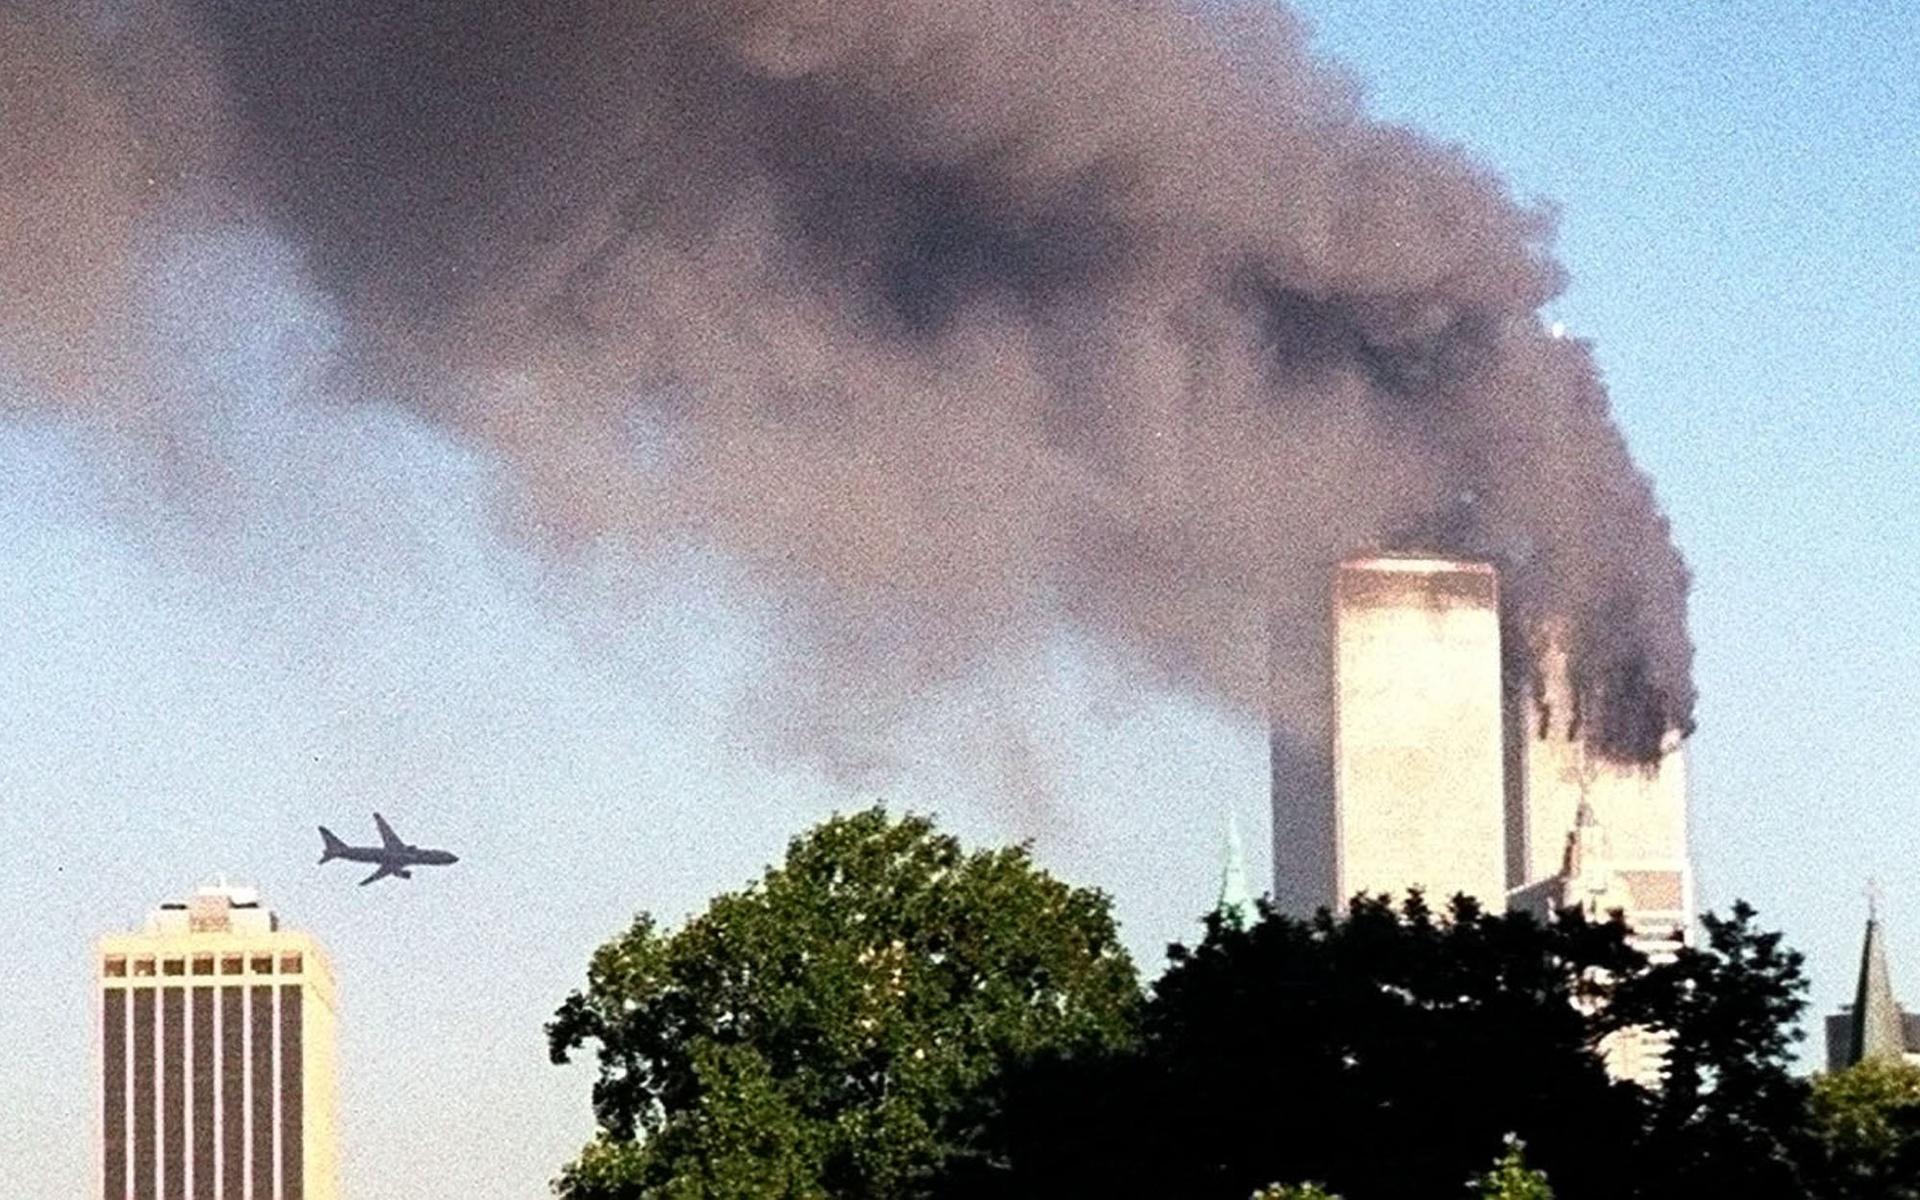 08.46 på morgonen den elfte september 2001 kraschade det första planet – en Boeing 757 – in i World Trade Centers norra torn. Den oväntade explosionen från den 110 våningar höga byggnaden hördes lång väg. Många New York-bor trodde till en början att det rörde sig om en jordbävning. Andra, som såg kraschen, antog att det var en olycka – tills ytterligare ett plan syntes åka in över södra Manhattan bara 17 minuter senare. 